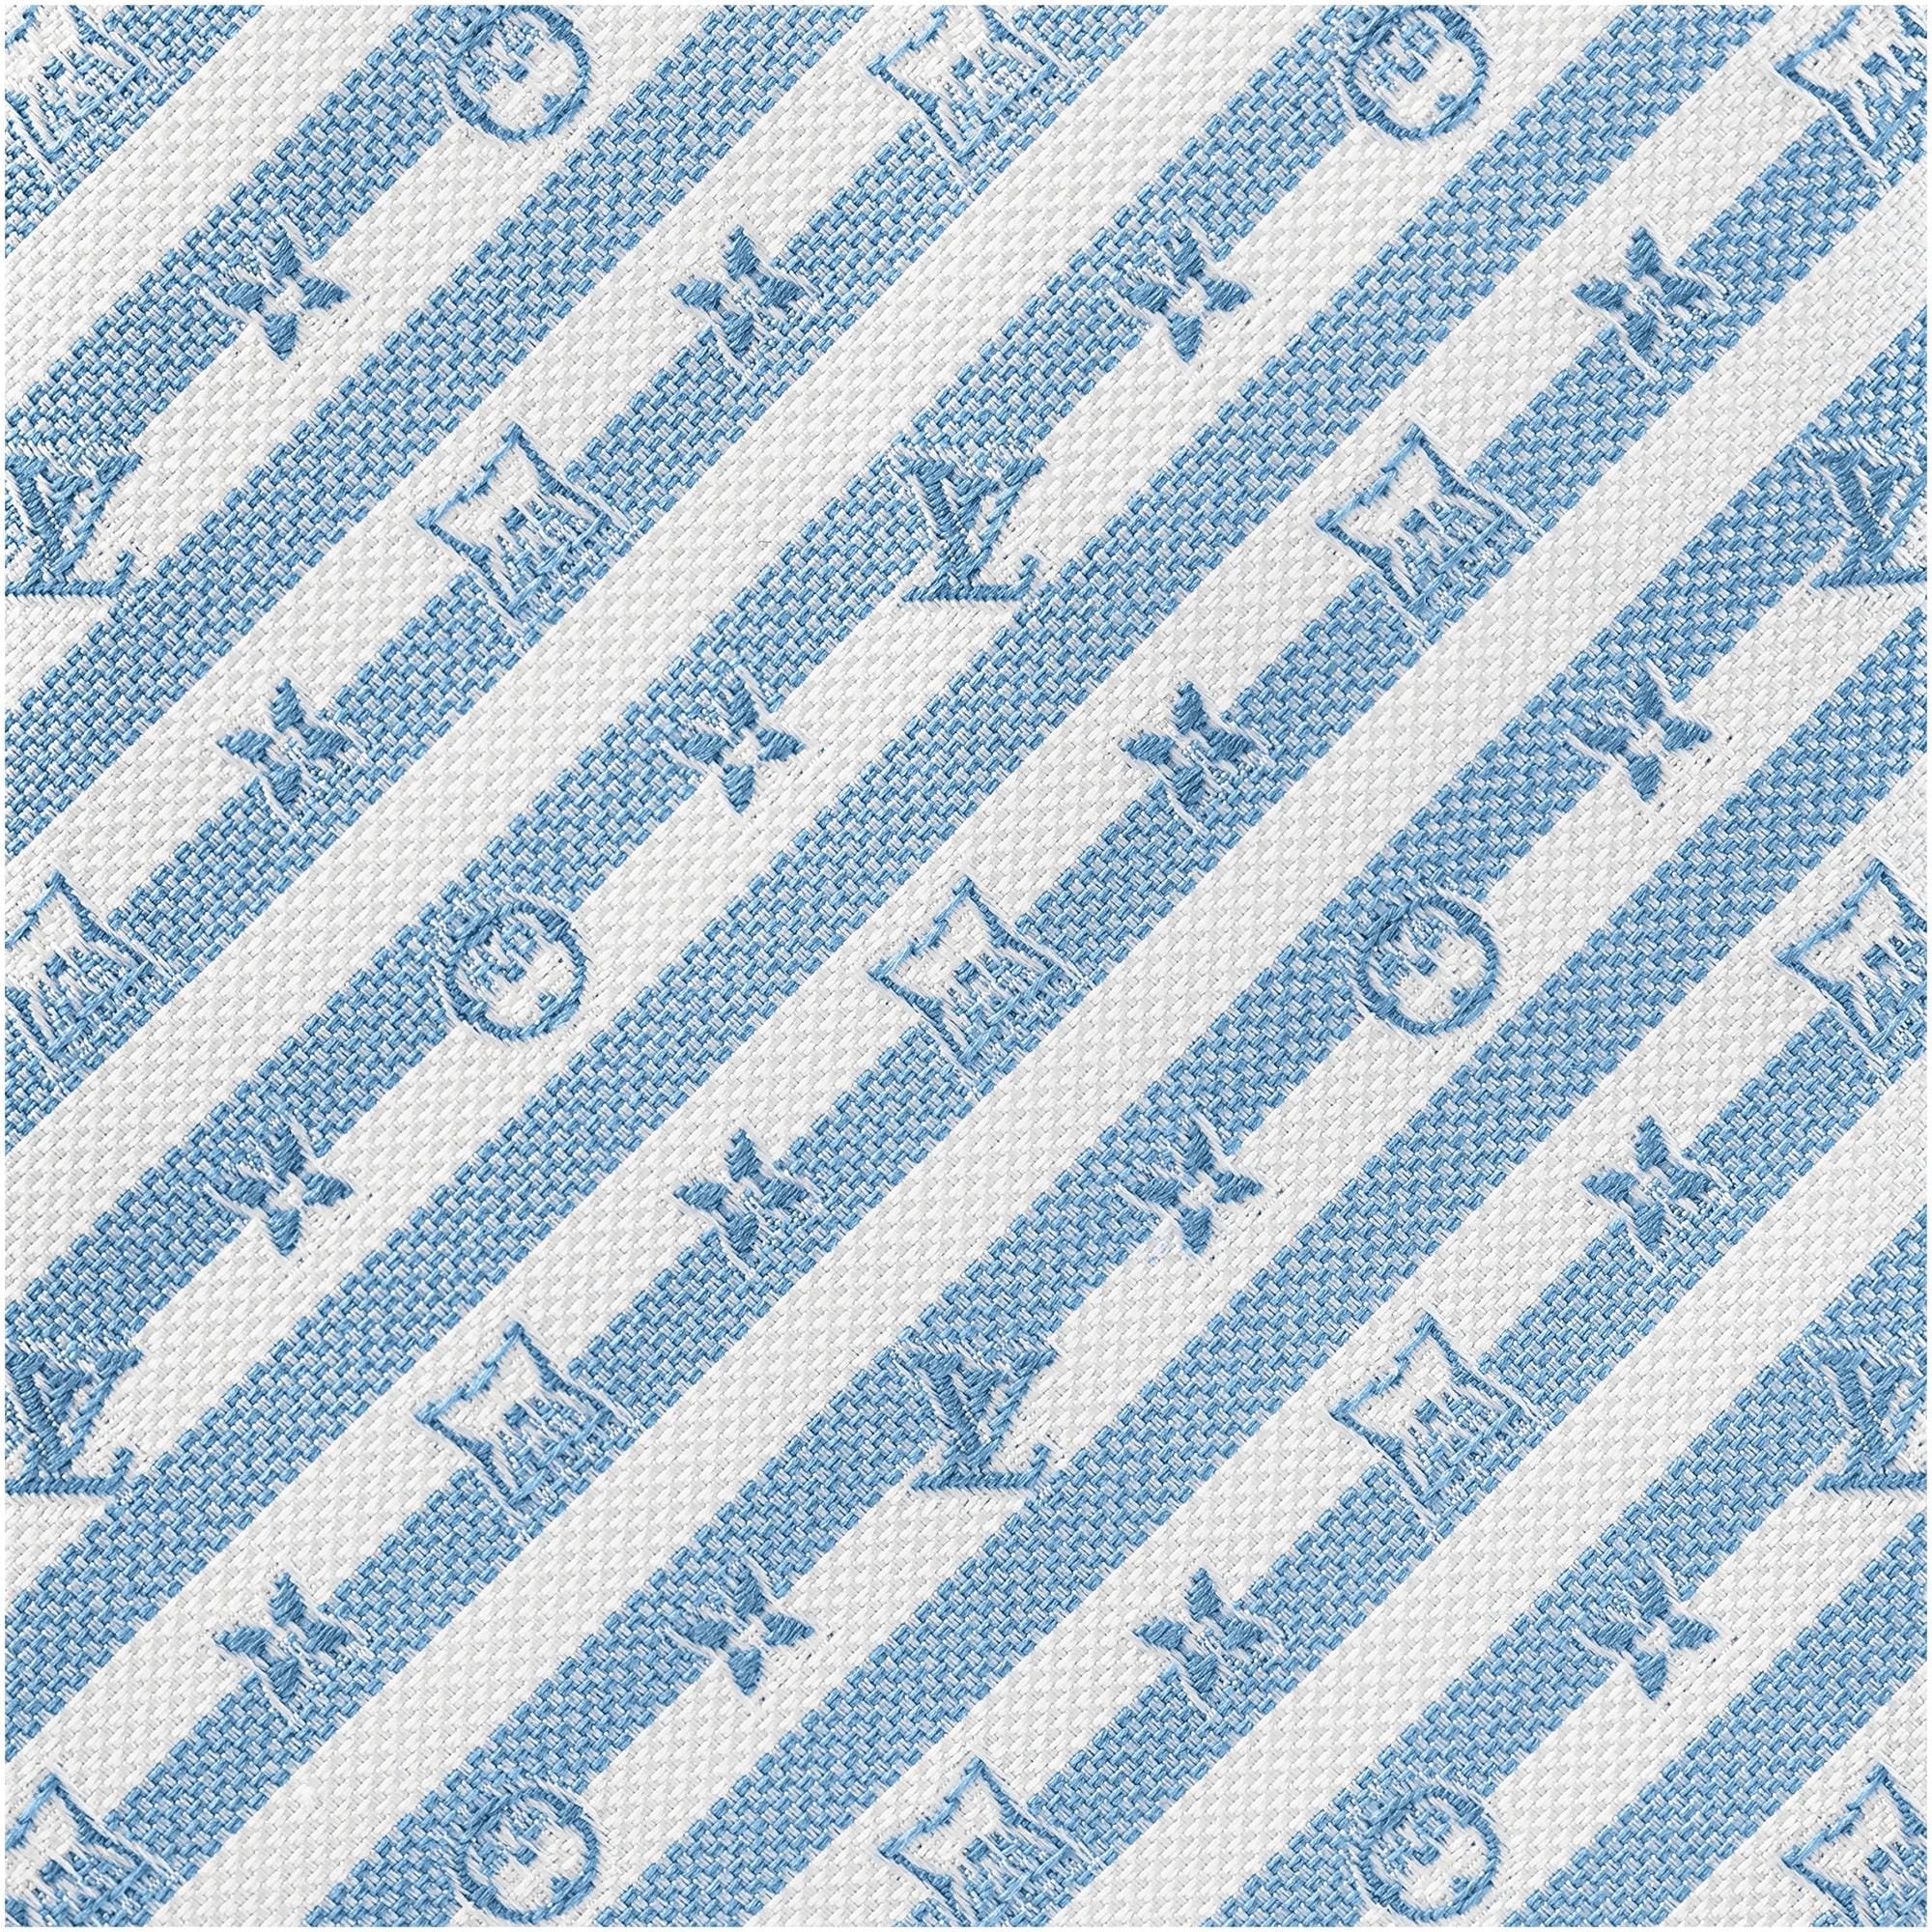 Monogram Two-Tone Stripes Tie - 3